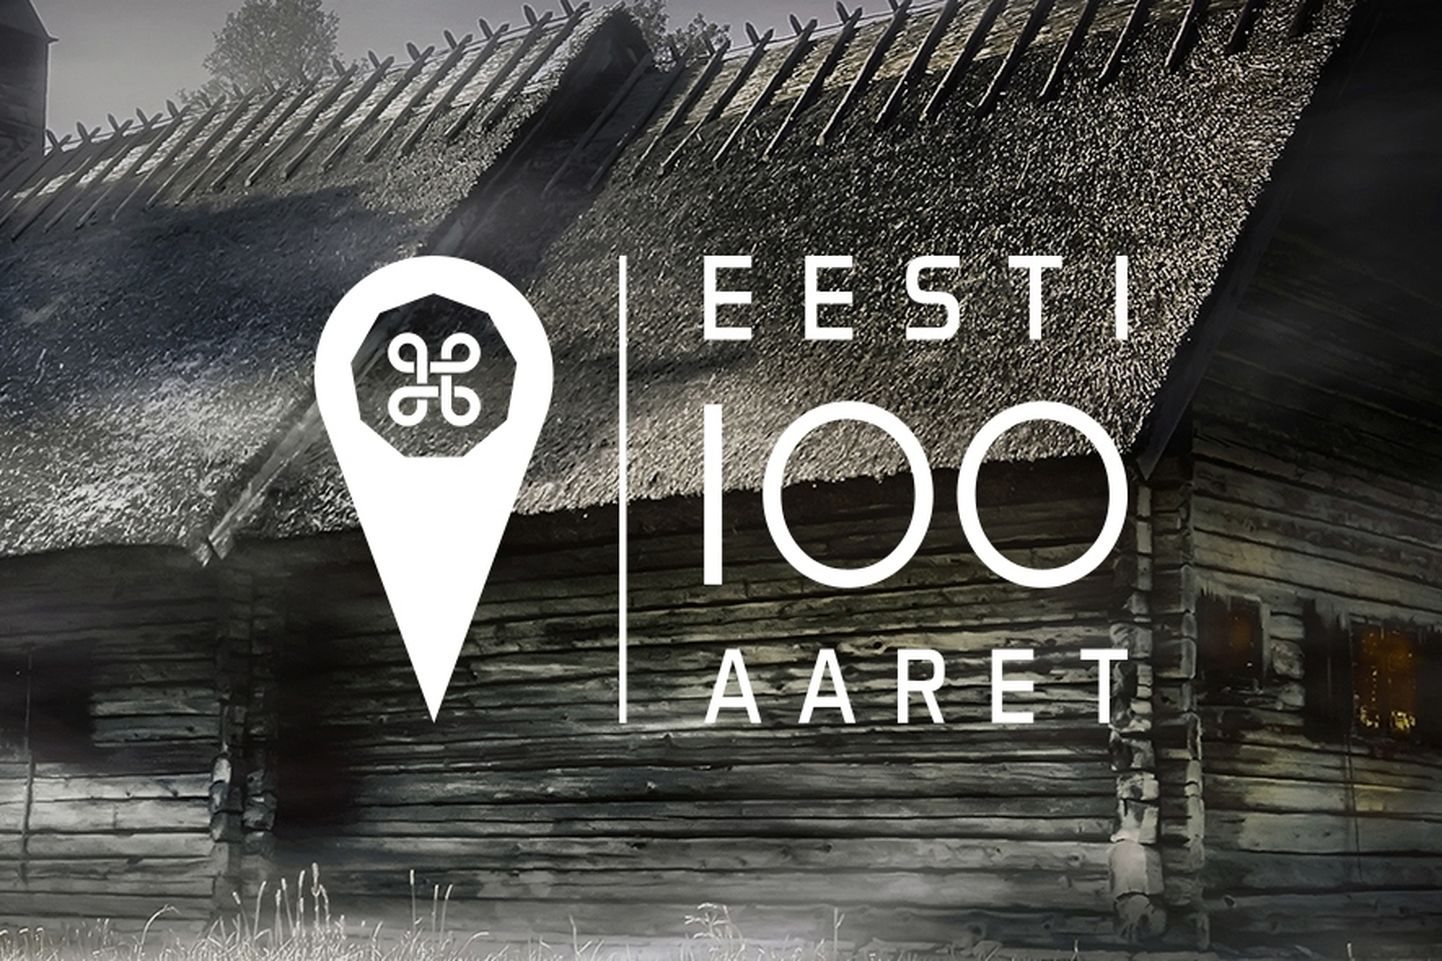 Eesti 100 aarde mängimine kestab kuni 2019. aasta sügiseni.